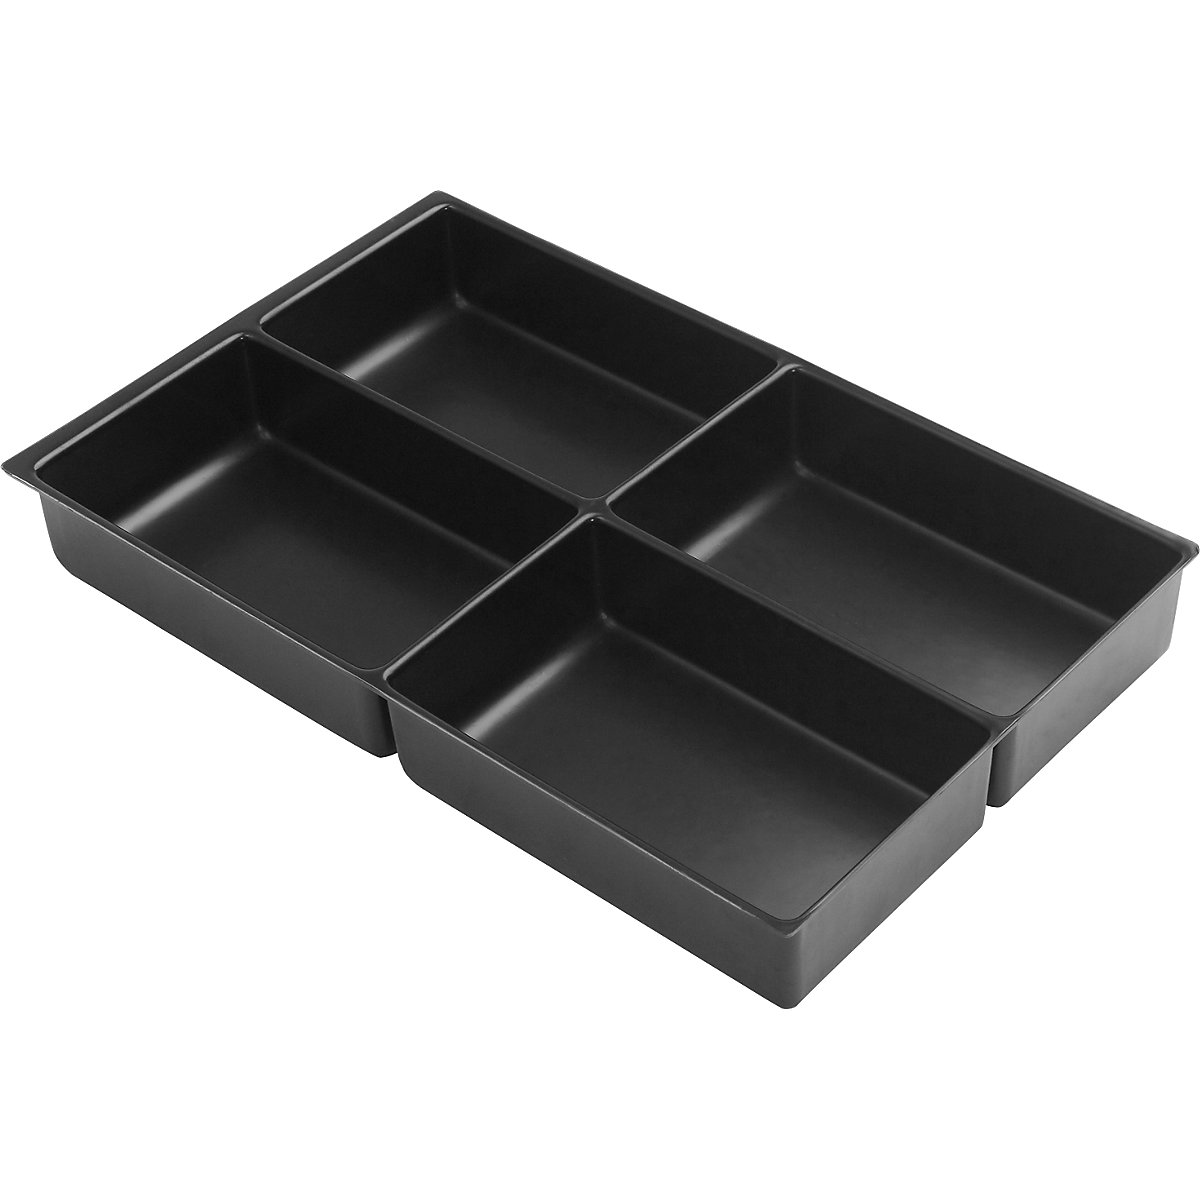 Compartimentation pour tiroir MultiDrawer™ – BISLEY, format A4, hauteur 48 mm, 4 casiers